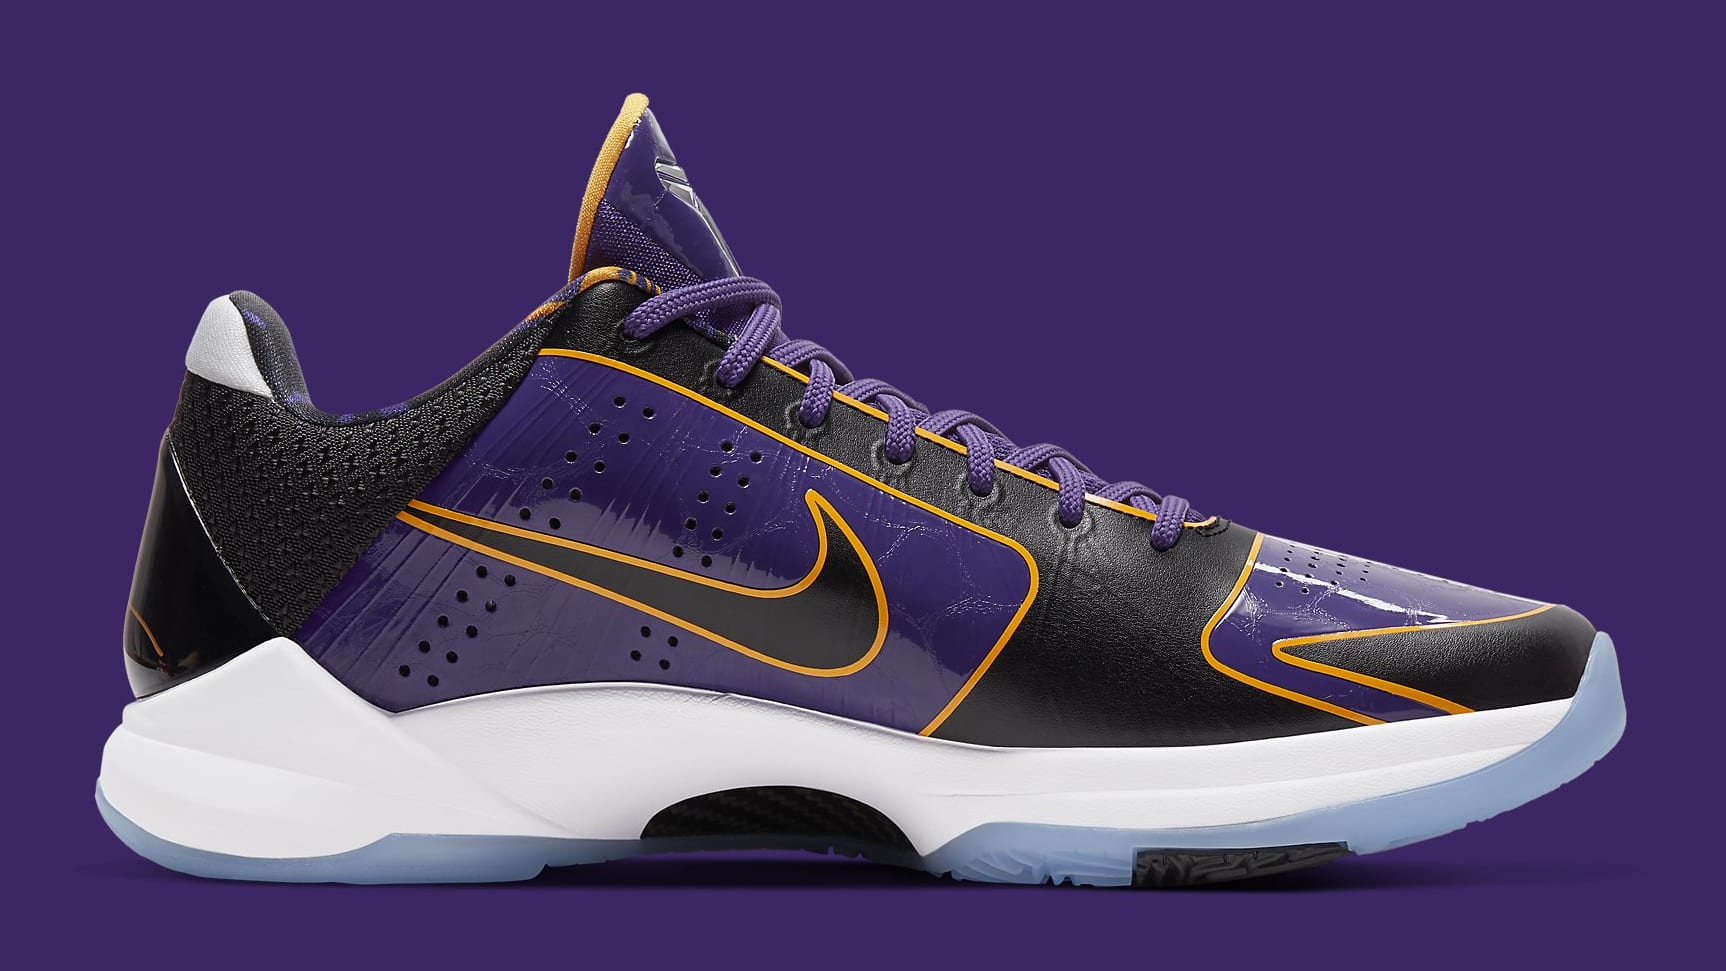 Nike Kobe 5 Protro Lakers Release Date CD4991-500 Medial